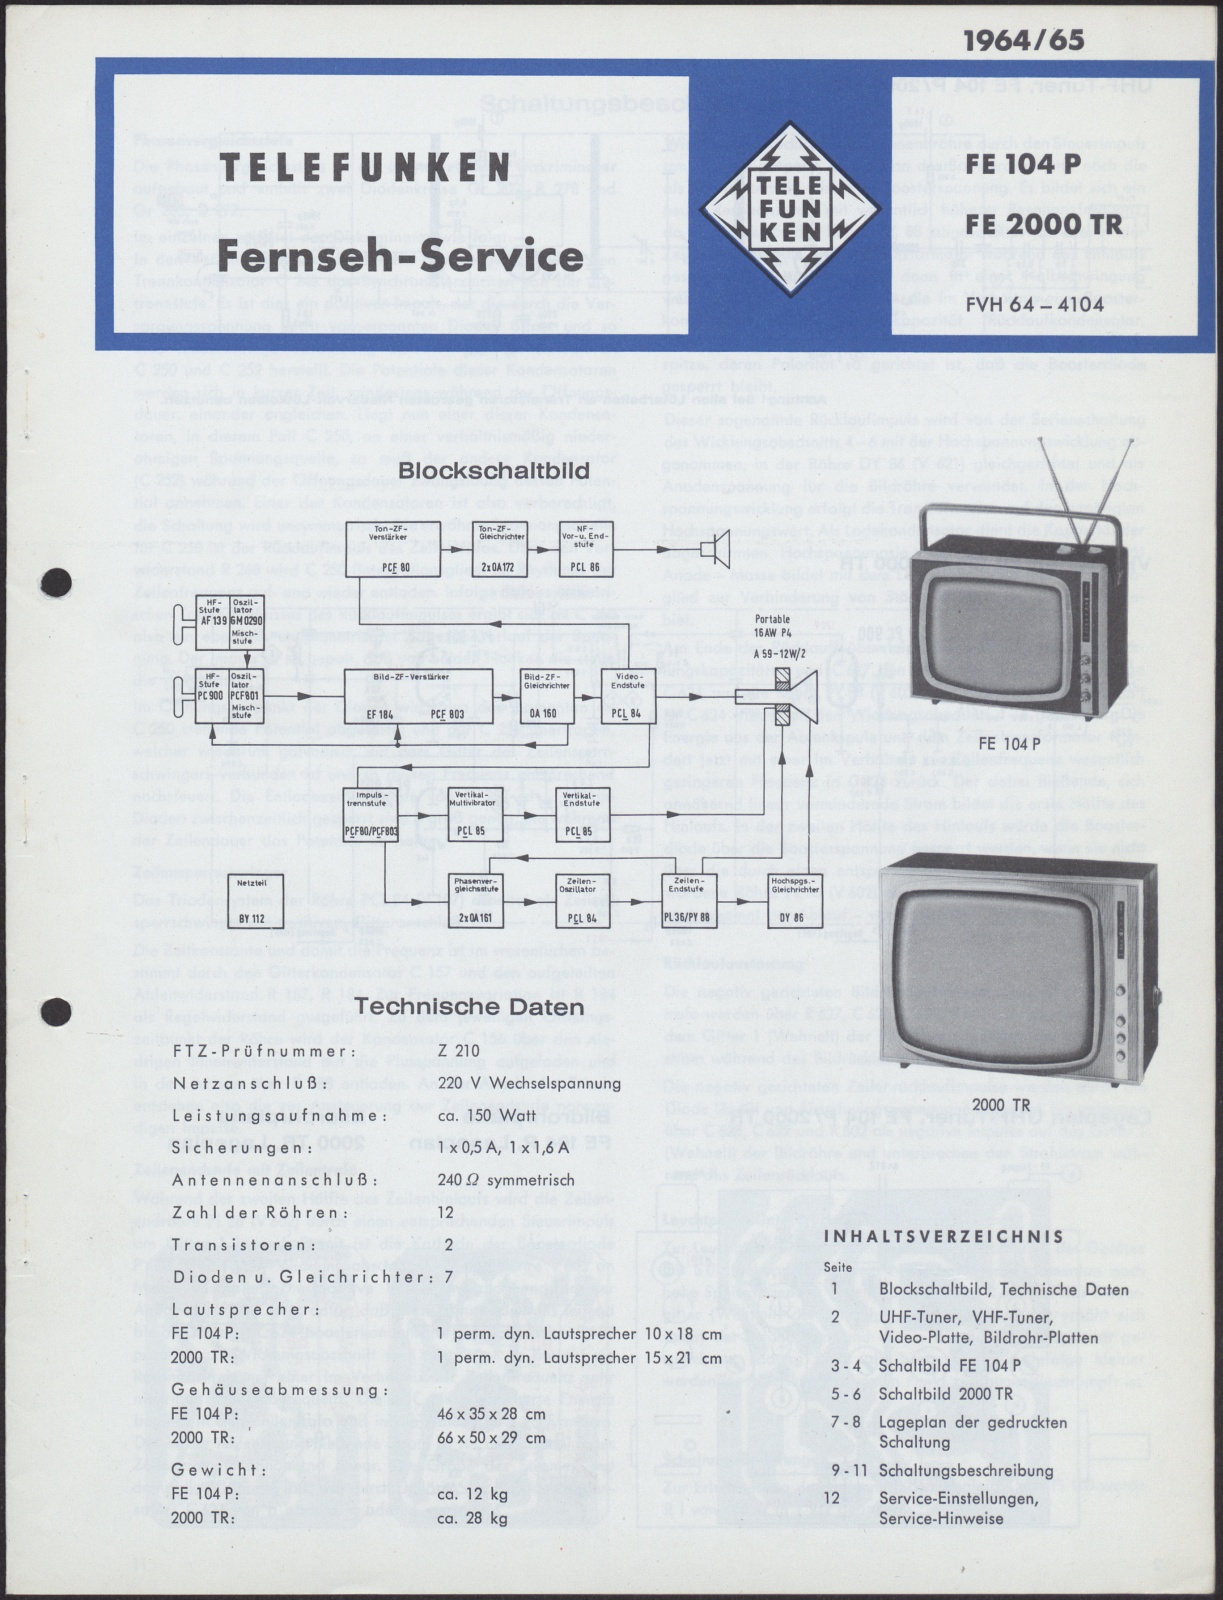 Werkstattanleitung: Telefunken Fernseh-Service FE 104 P FE 2000 TR  1964/65 : FVH 64-4104 (Stiftung Deutsches Technikmuseum Berlin CC0)